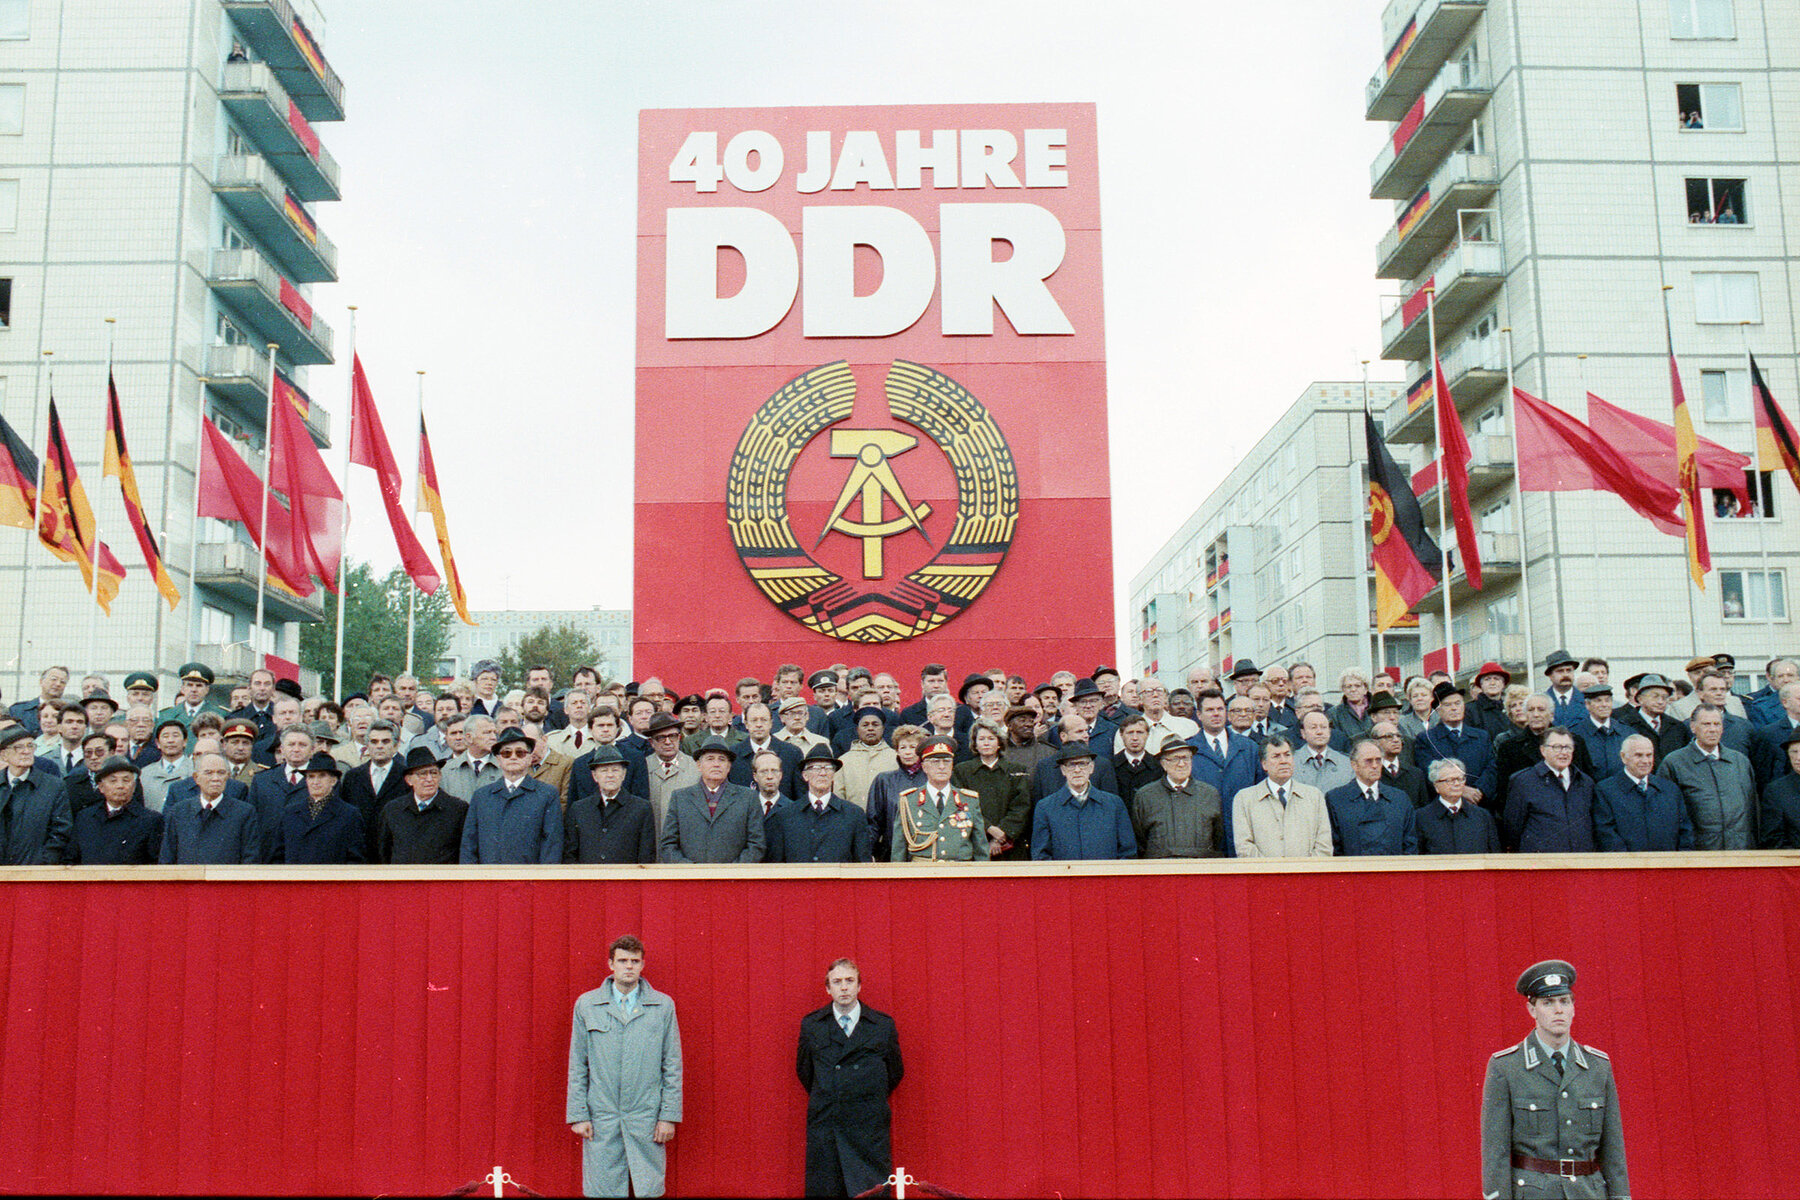 Eine Gruppe von Männern und wenigen Frauen in Anzügen und militärischen Uniformen steht in vier Reihen auf einer Tribüne. Hinter der Tribüne steht ein rotes Schild mit der Aufschrift: 40 Jahre DDR. Darunter das Staatswappen der DDR.